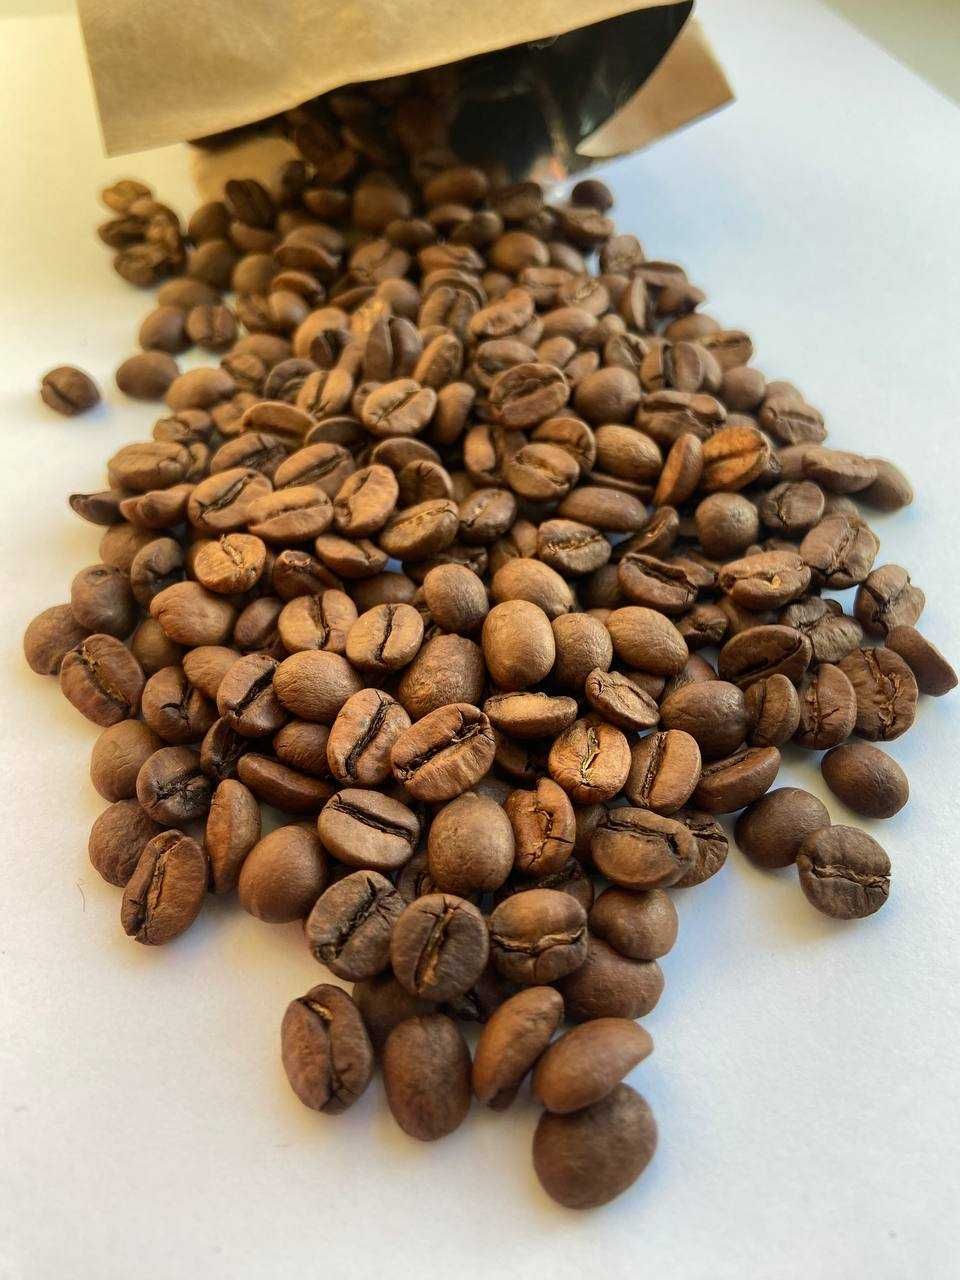 Кава в зернах 1 кг. НЕЙМОВІРНИЙ купаж 80% 20% по СУПЕР ЦІНІ!! Кофе